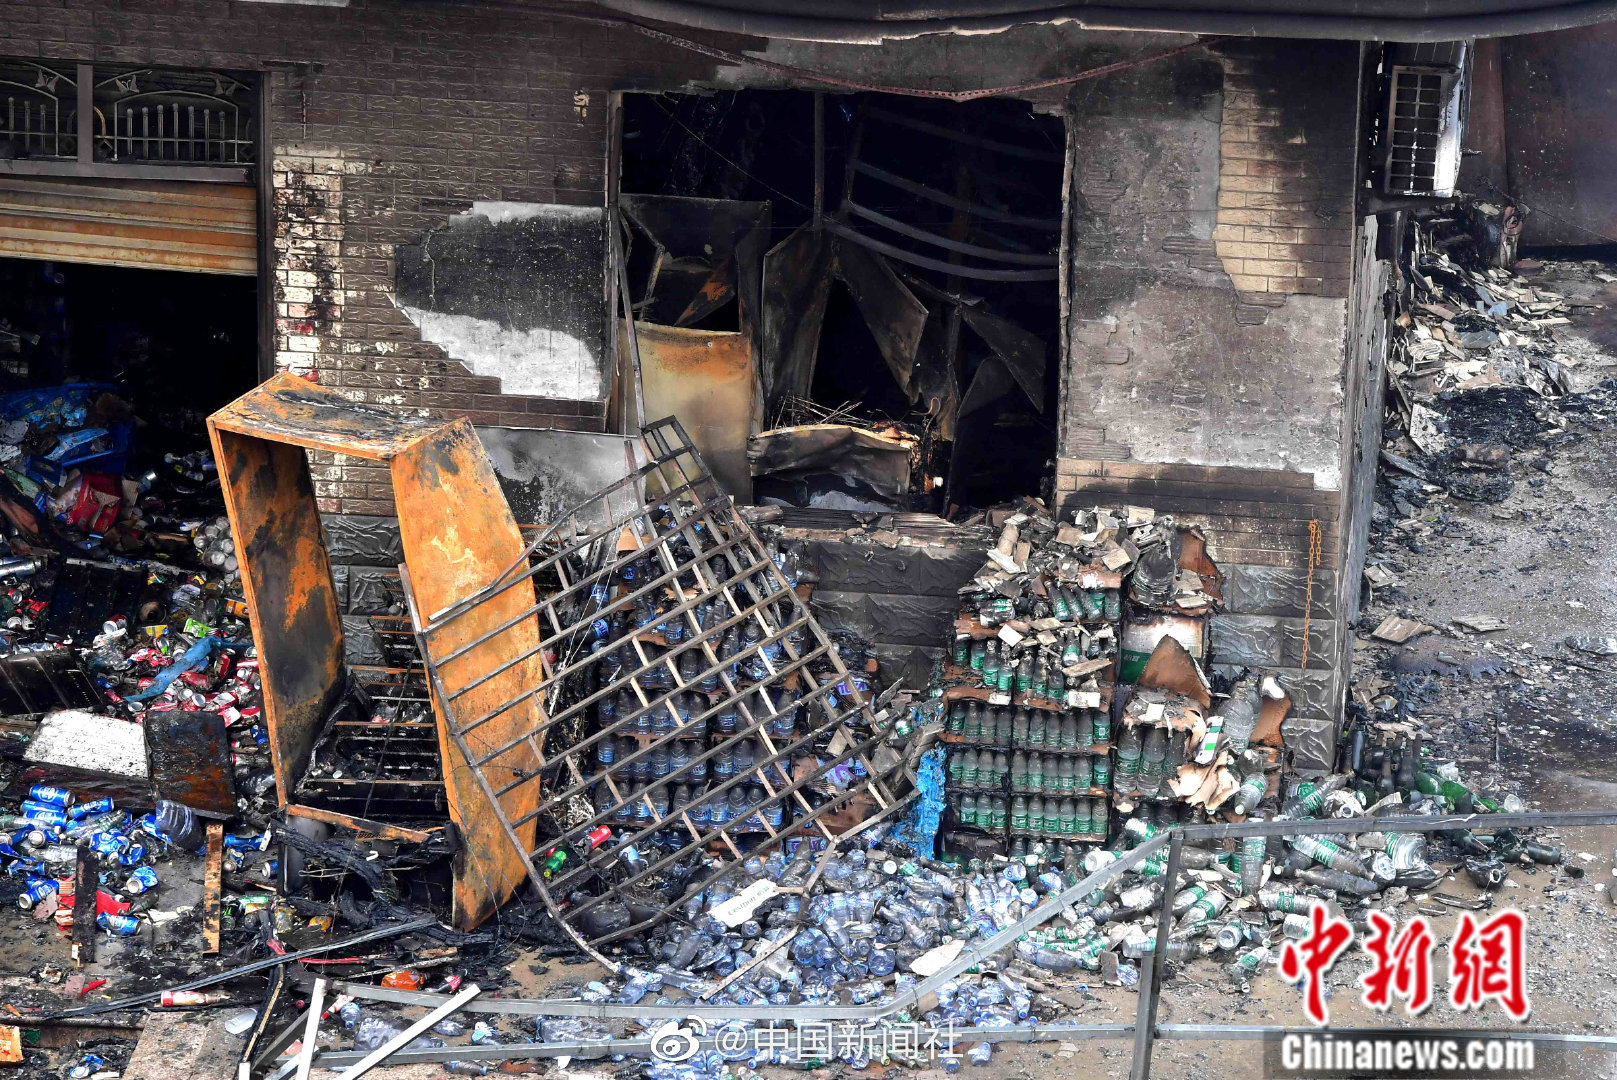 北京一锅炉发生爆炸飞出200多米,1人烧伤并骨折_安全生产事故警示视频-千里眼视频-搜狐视频